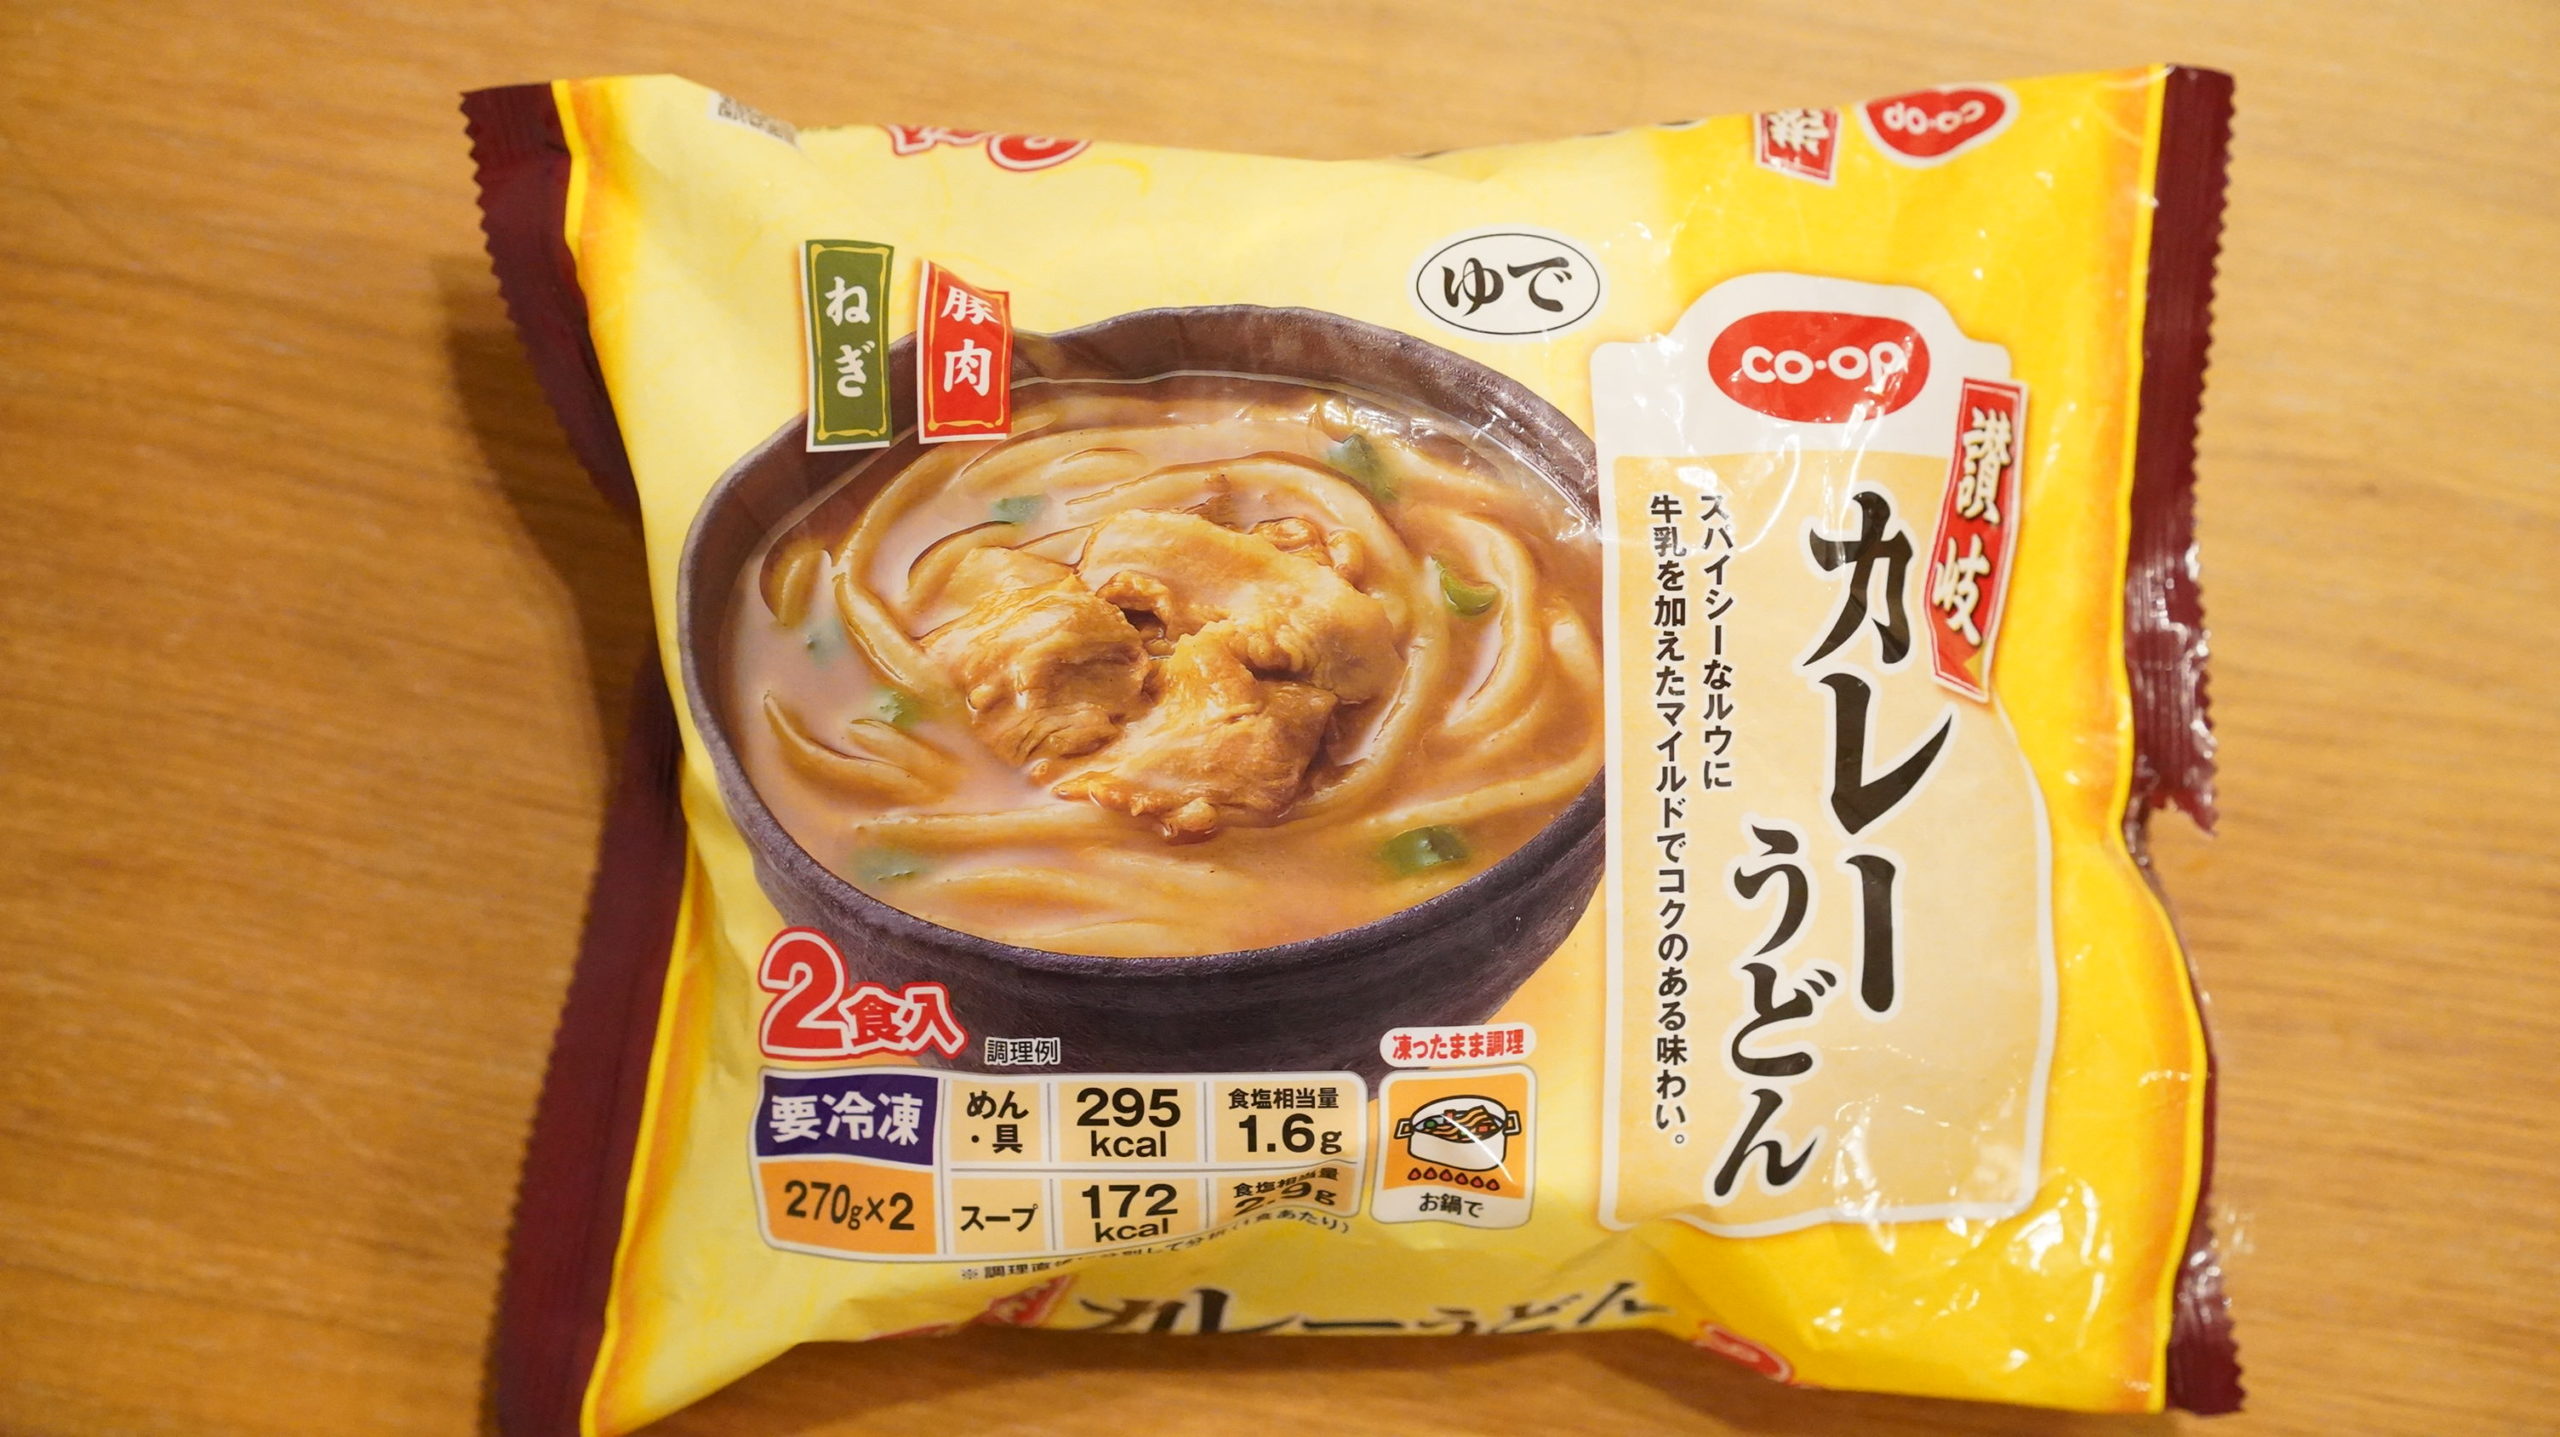 生協coop宅配の冷凍食品「讃岐カレーうどん」のパッケージ写真